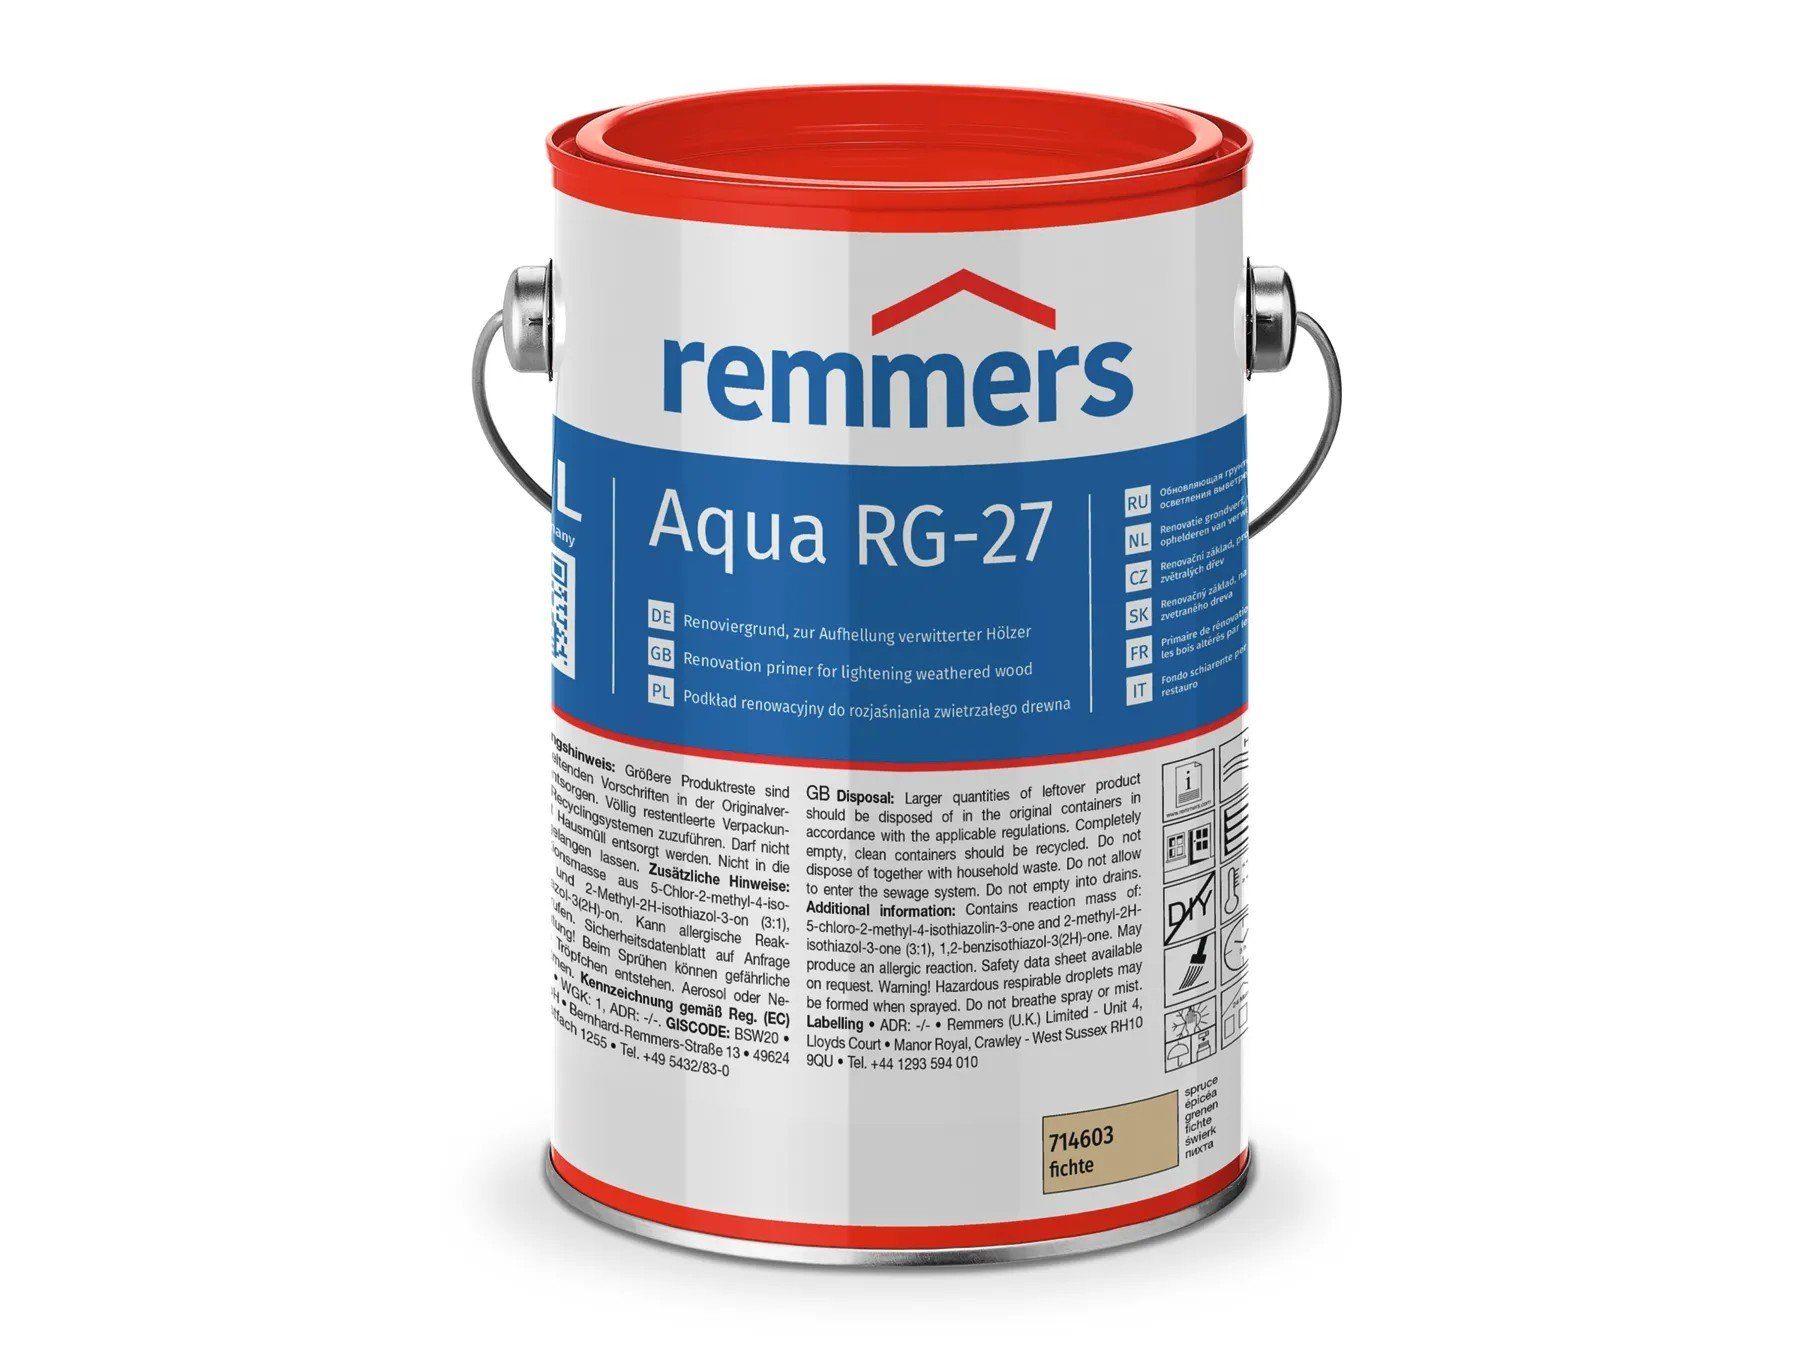 Remmers Holzgrundierung Aqua RG-27-Renoviergrund